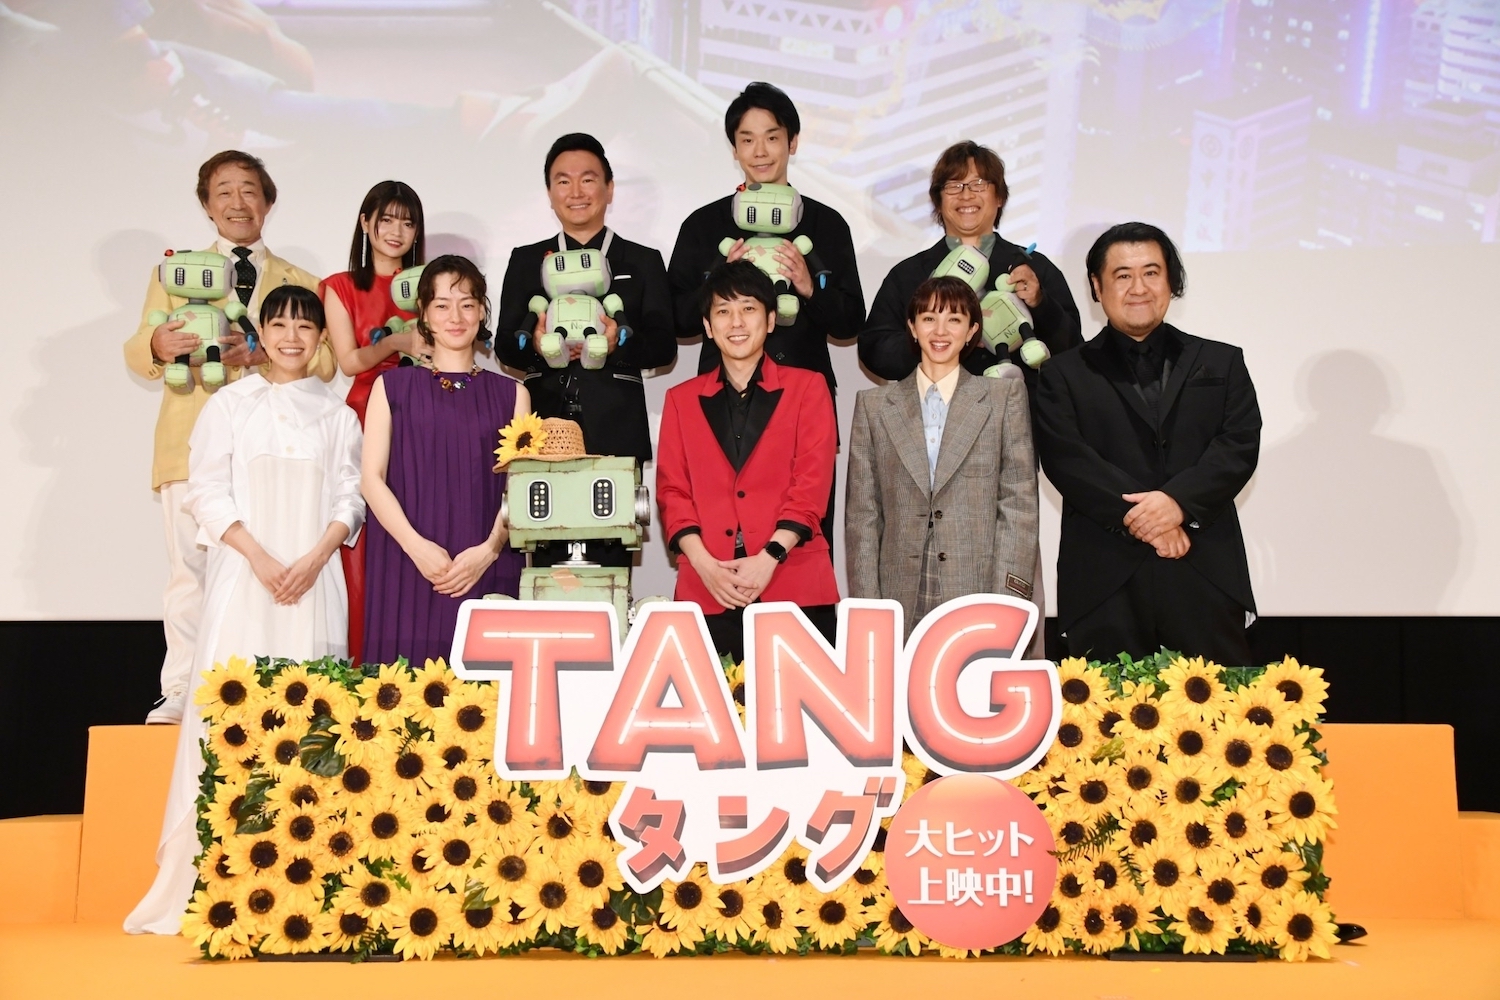 映画『TANG タング』初日舞台挨拶にて主演・二宮和也とキャストたち、三木孝浩監督